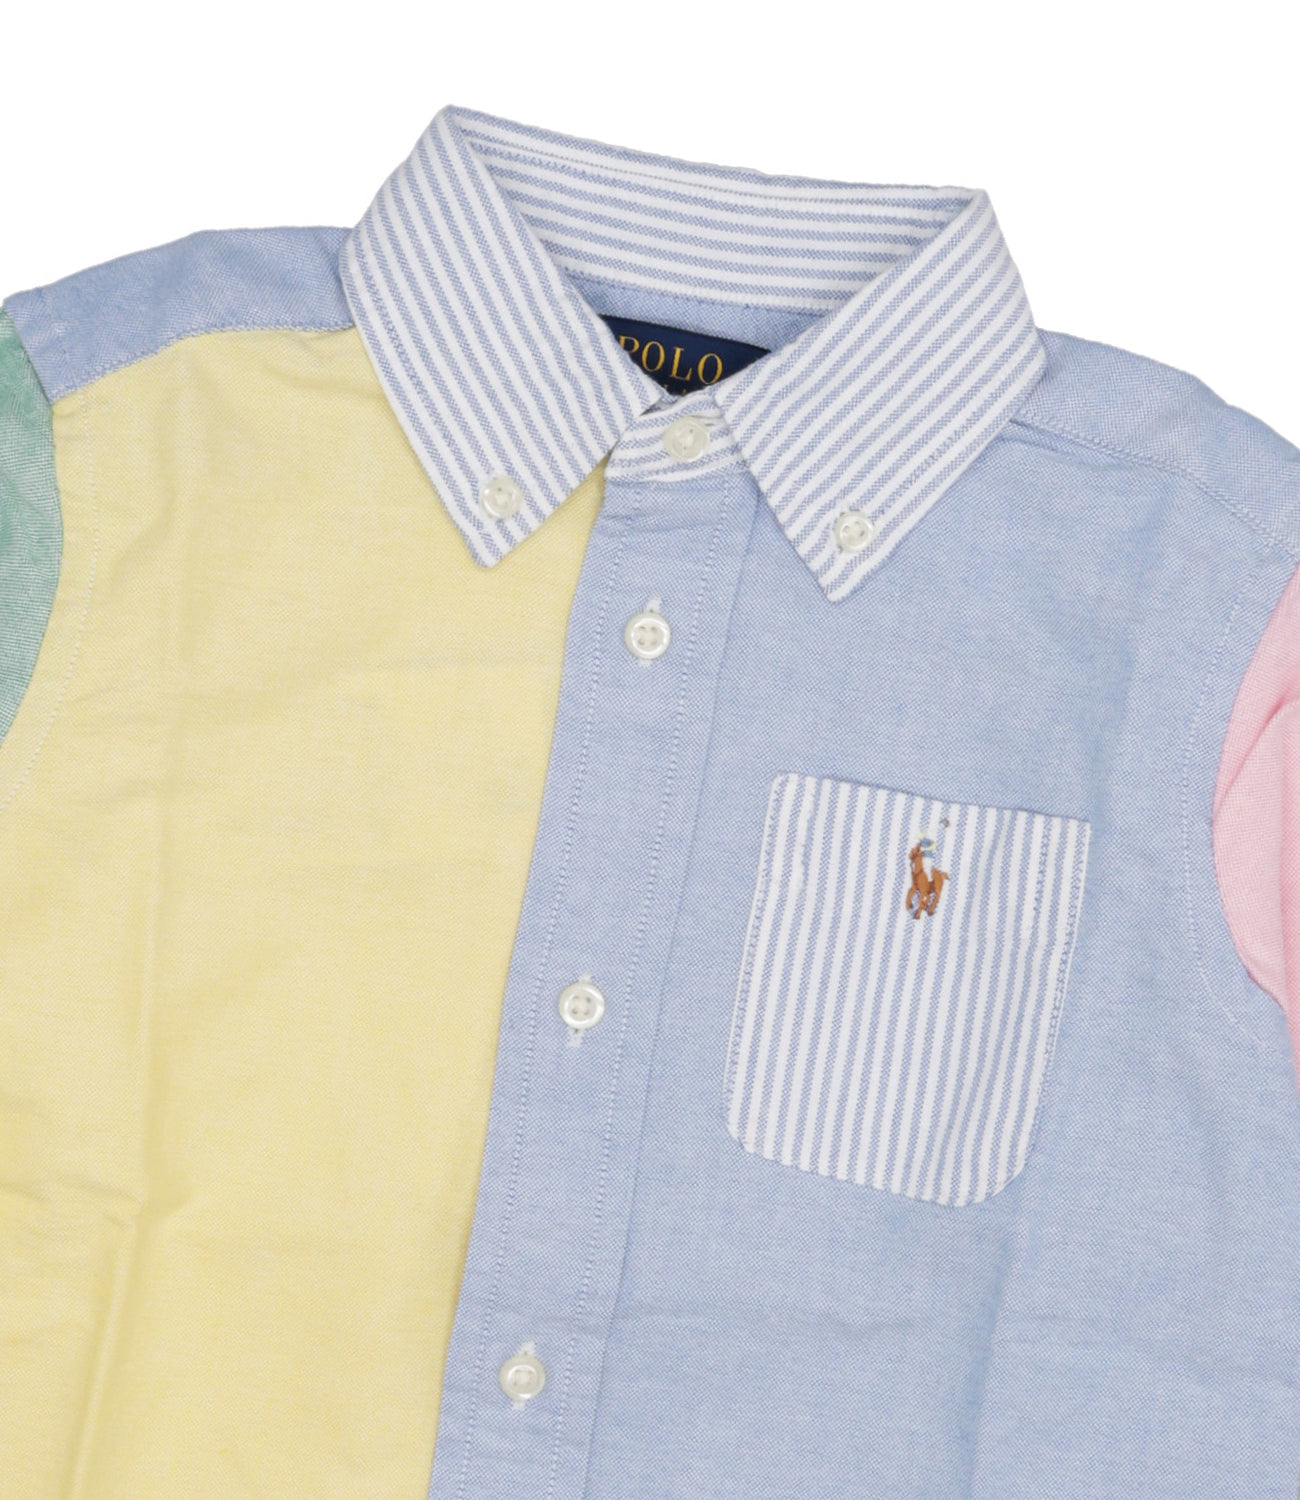 Ralph Lauren Childrenswear | Camicia Gialla e Celeste